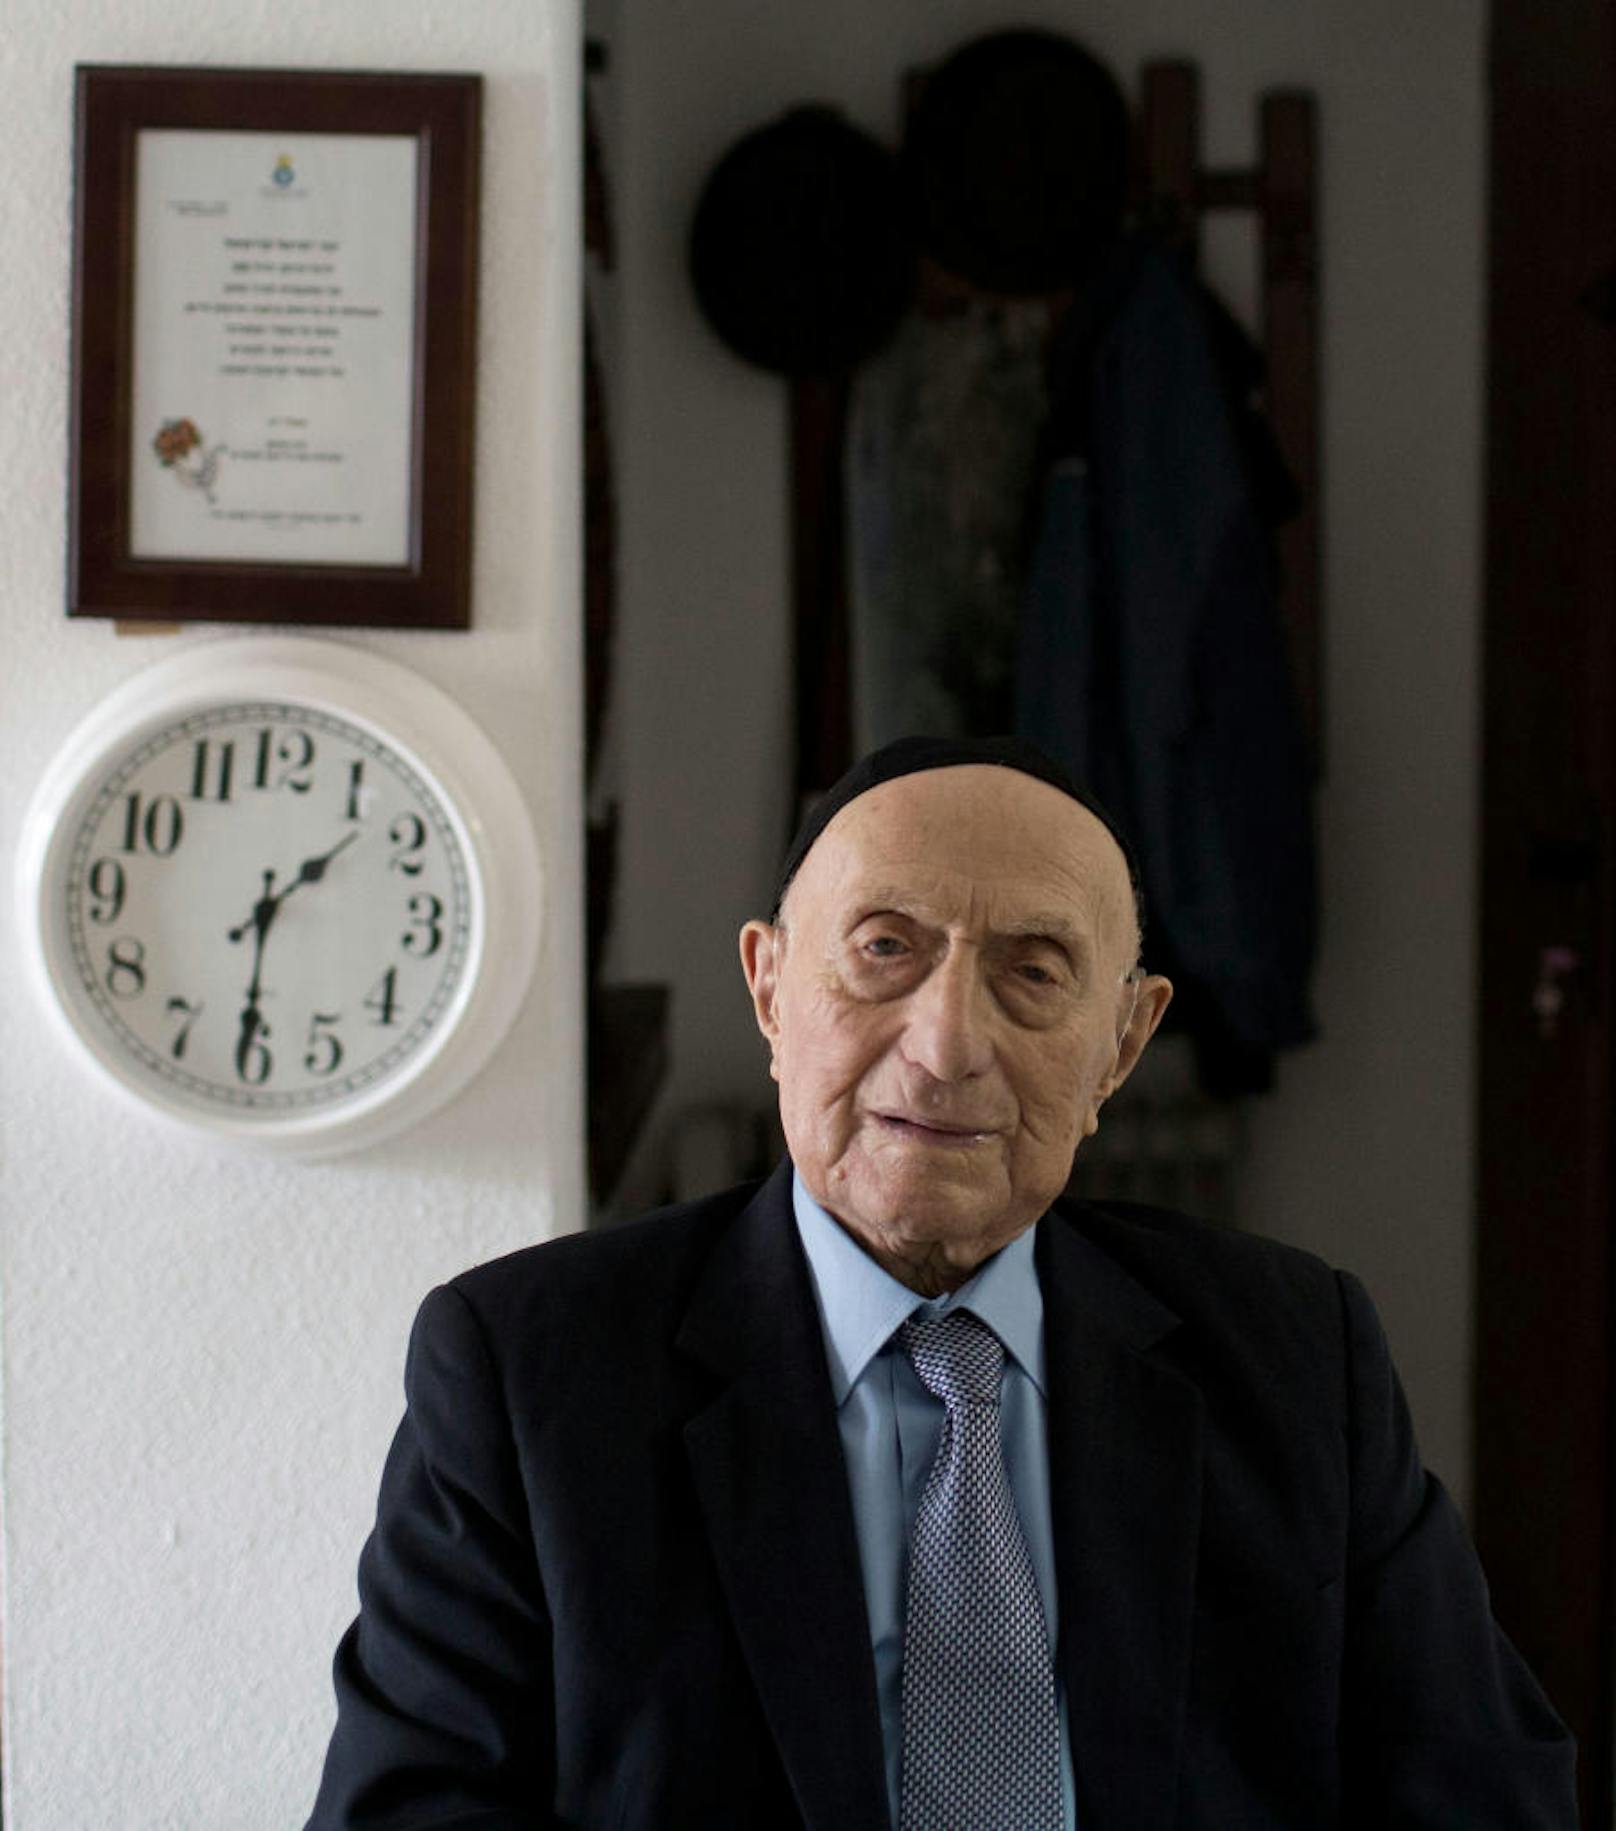 Dann, im Jahr 1944, wurde Israel Kristal nach Auschwitz deportiert. Er überlebte als einziger seiner Familie.